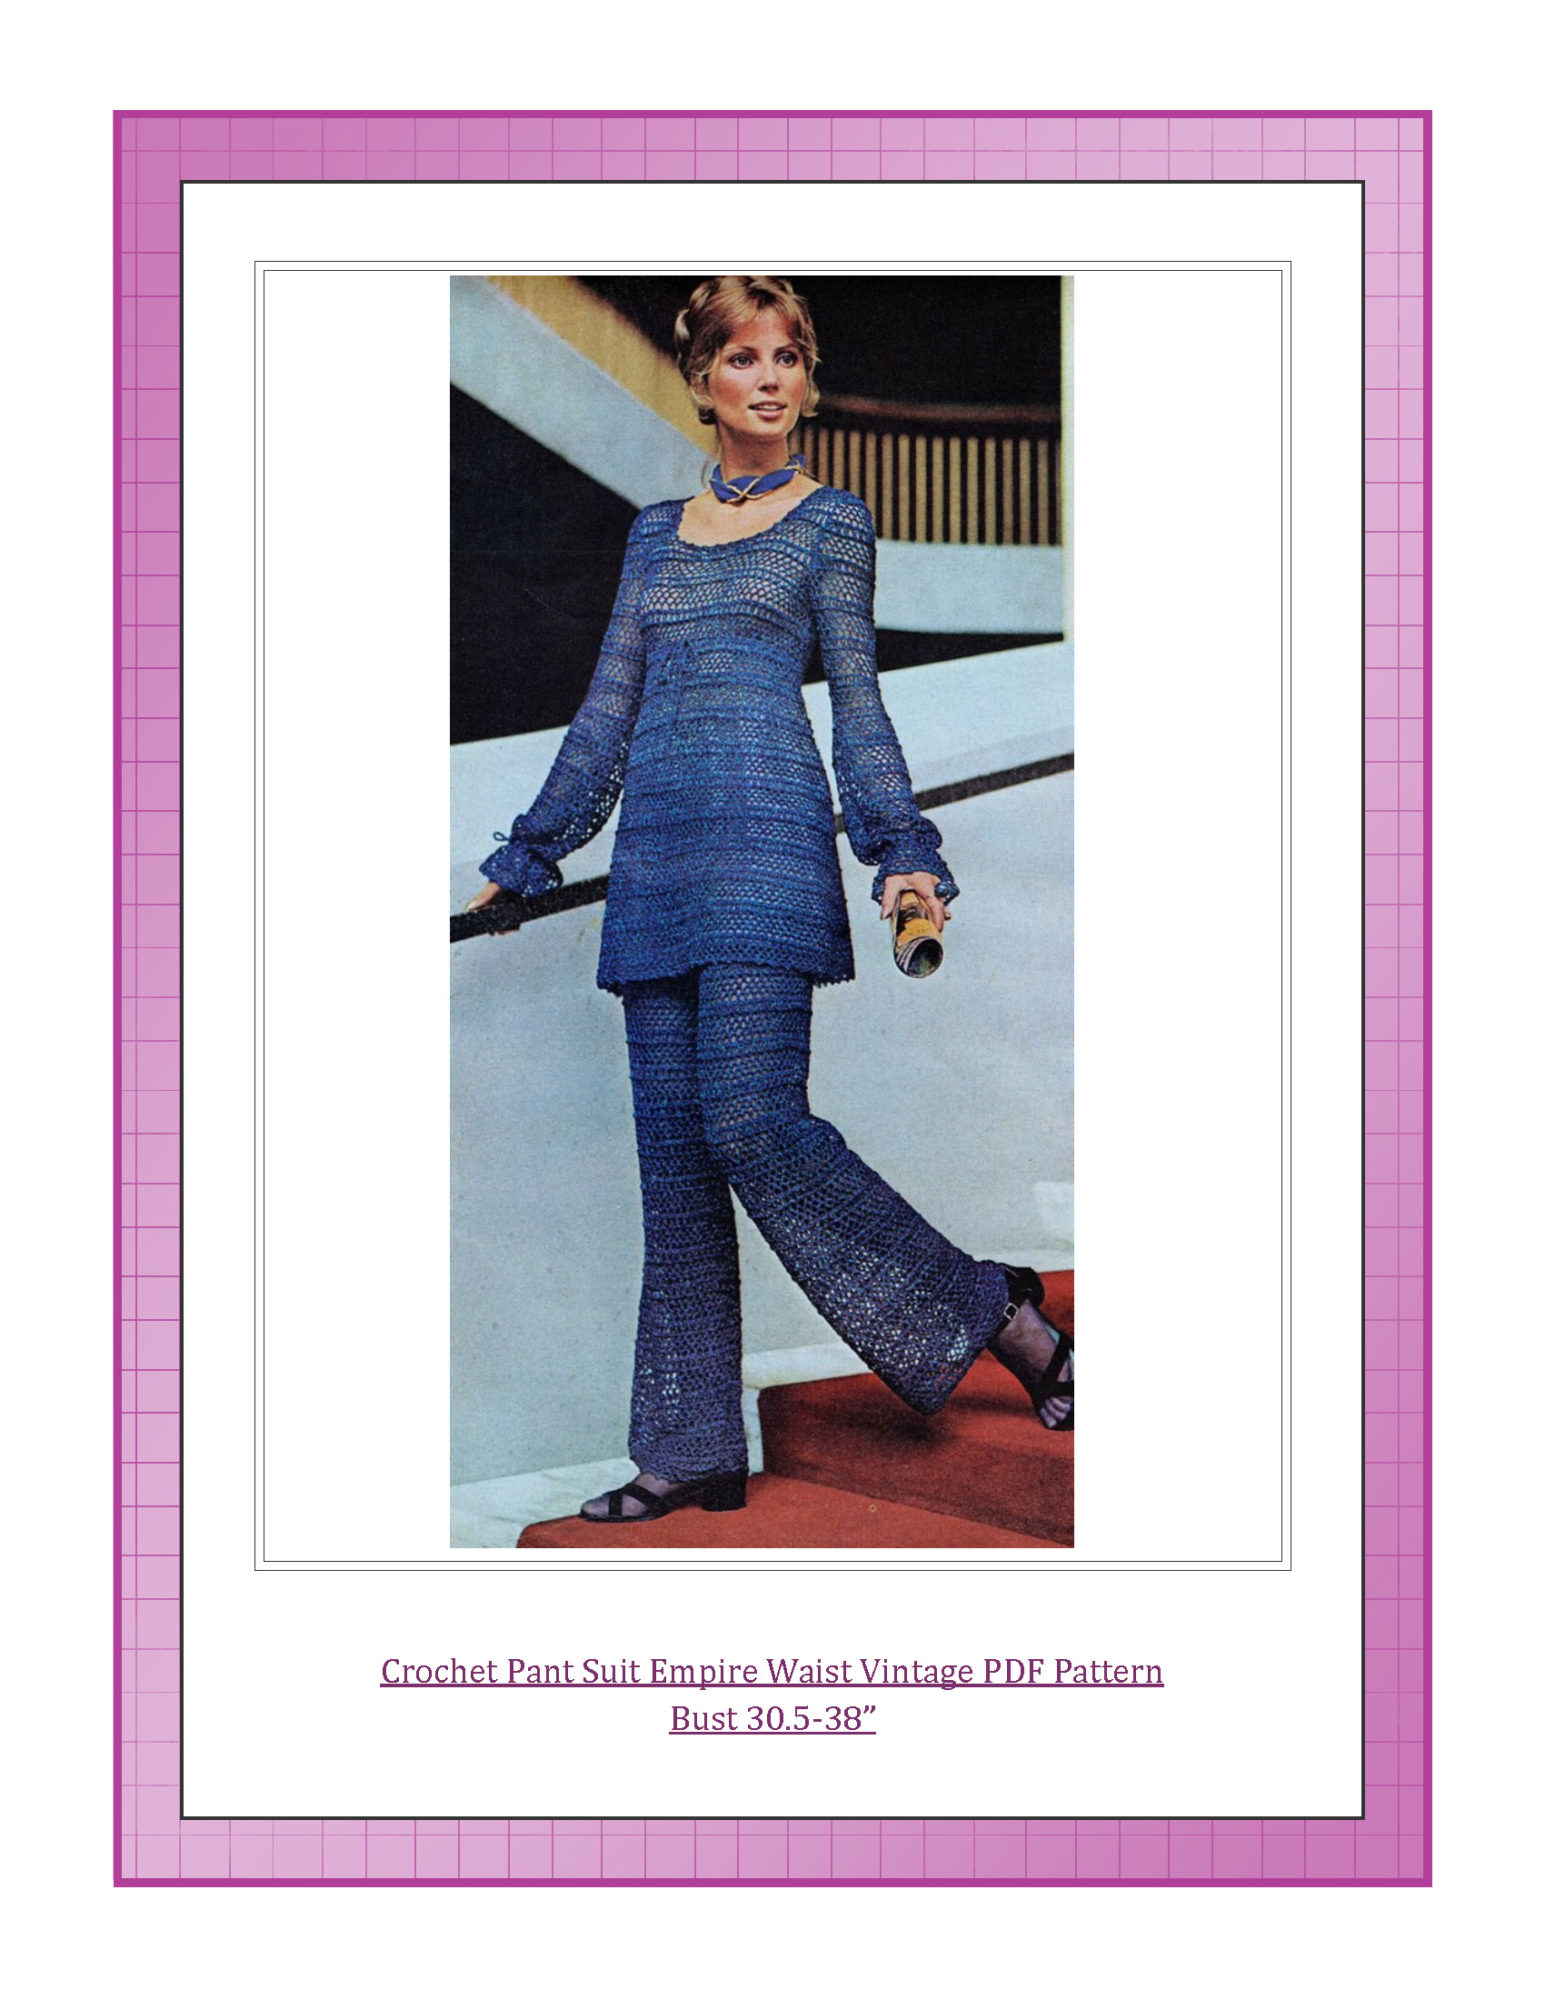 Crochet Pant Suit Empire Waist Vintage PDF Pattern Bust 30.5-38”